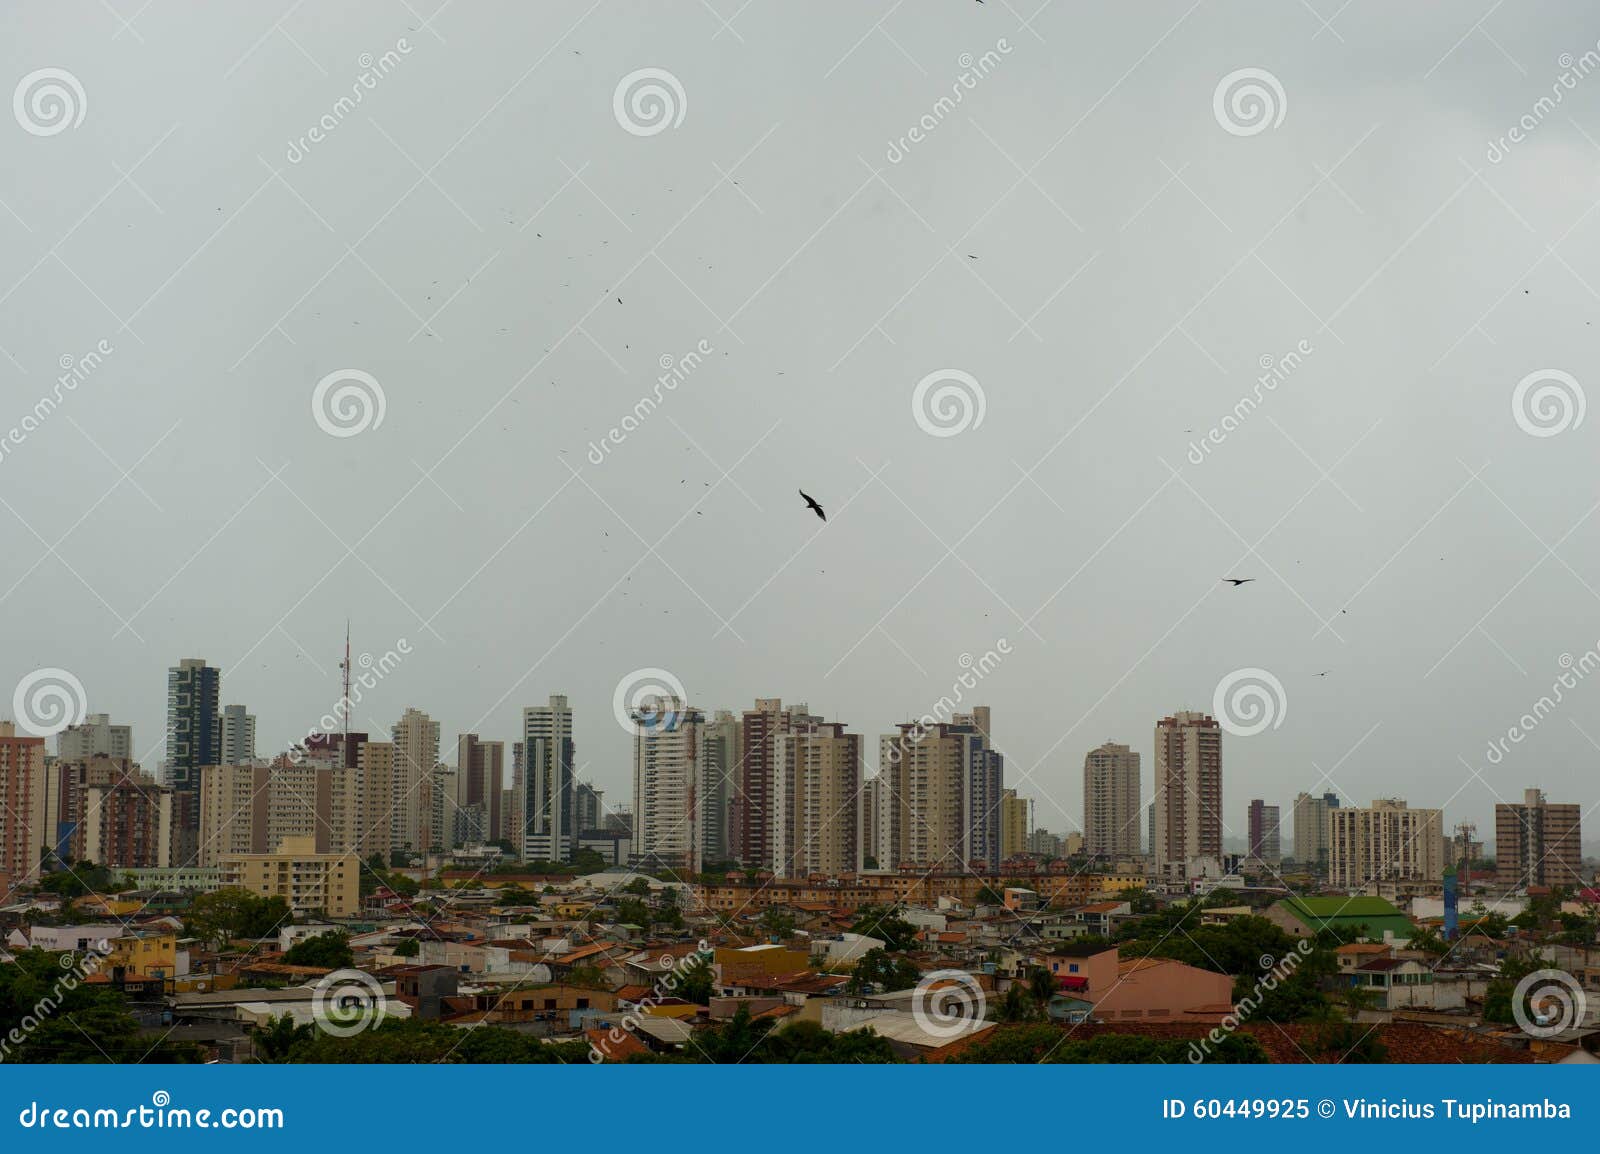 city of belem do para